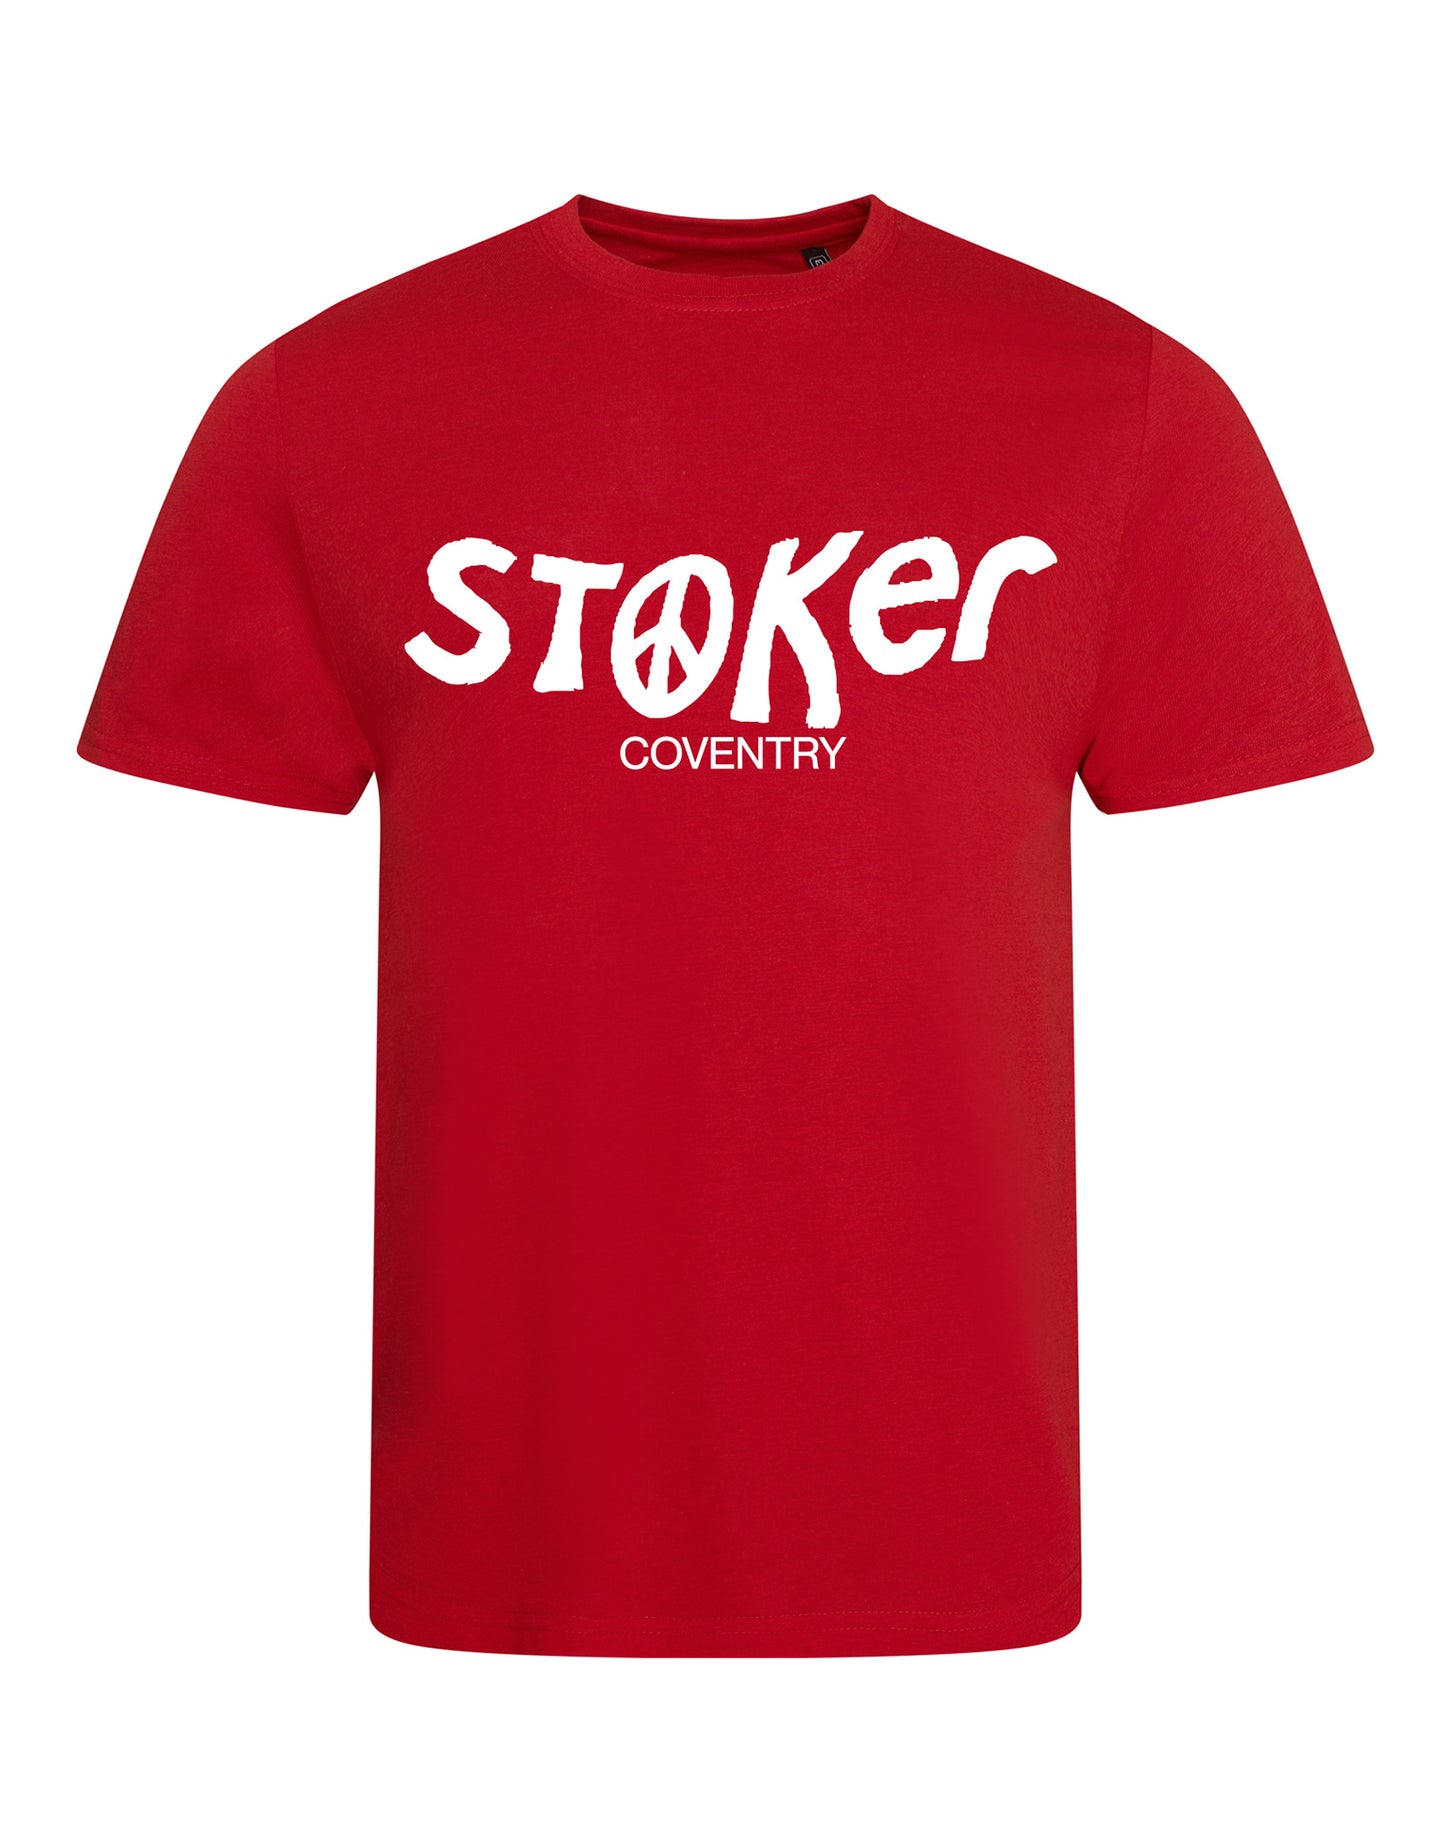 Stoker unisex fit T-shirt - various colours